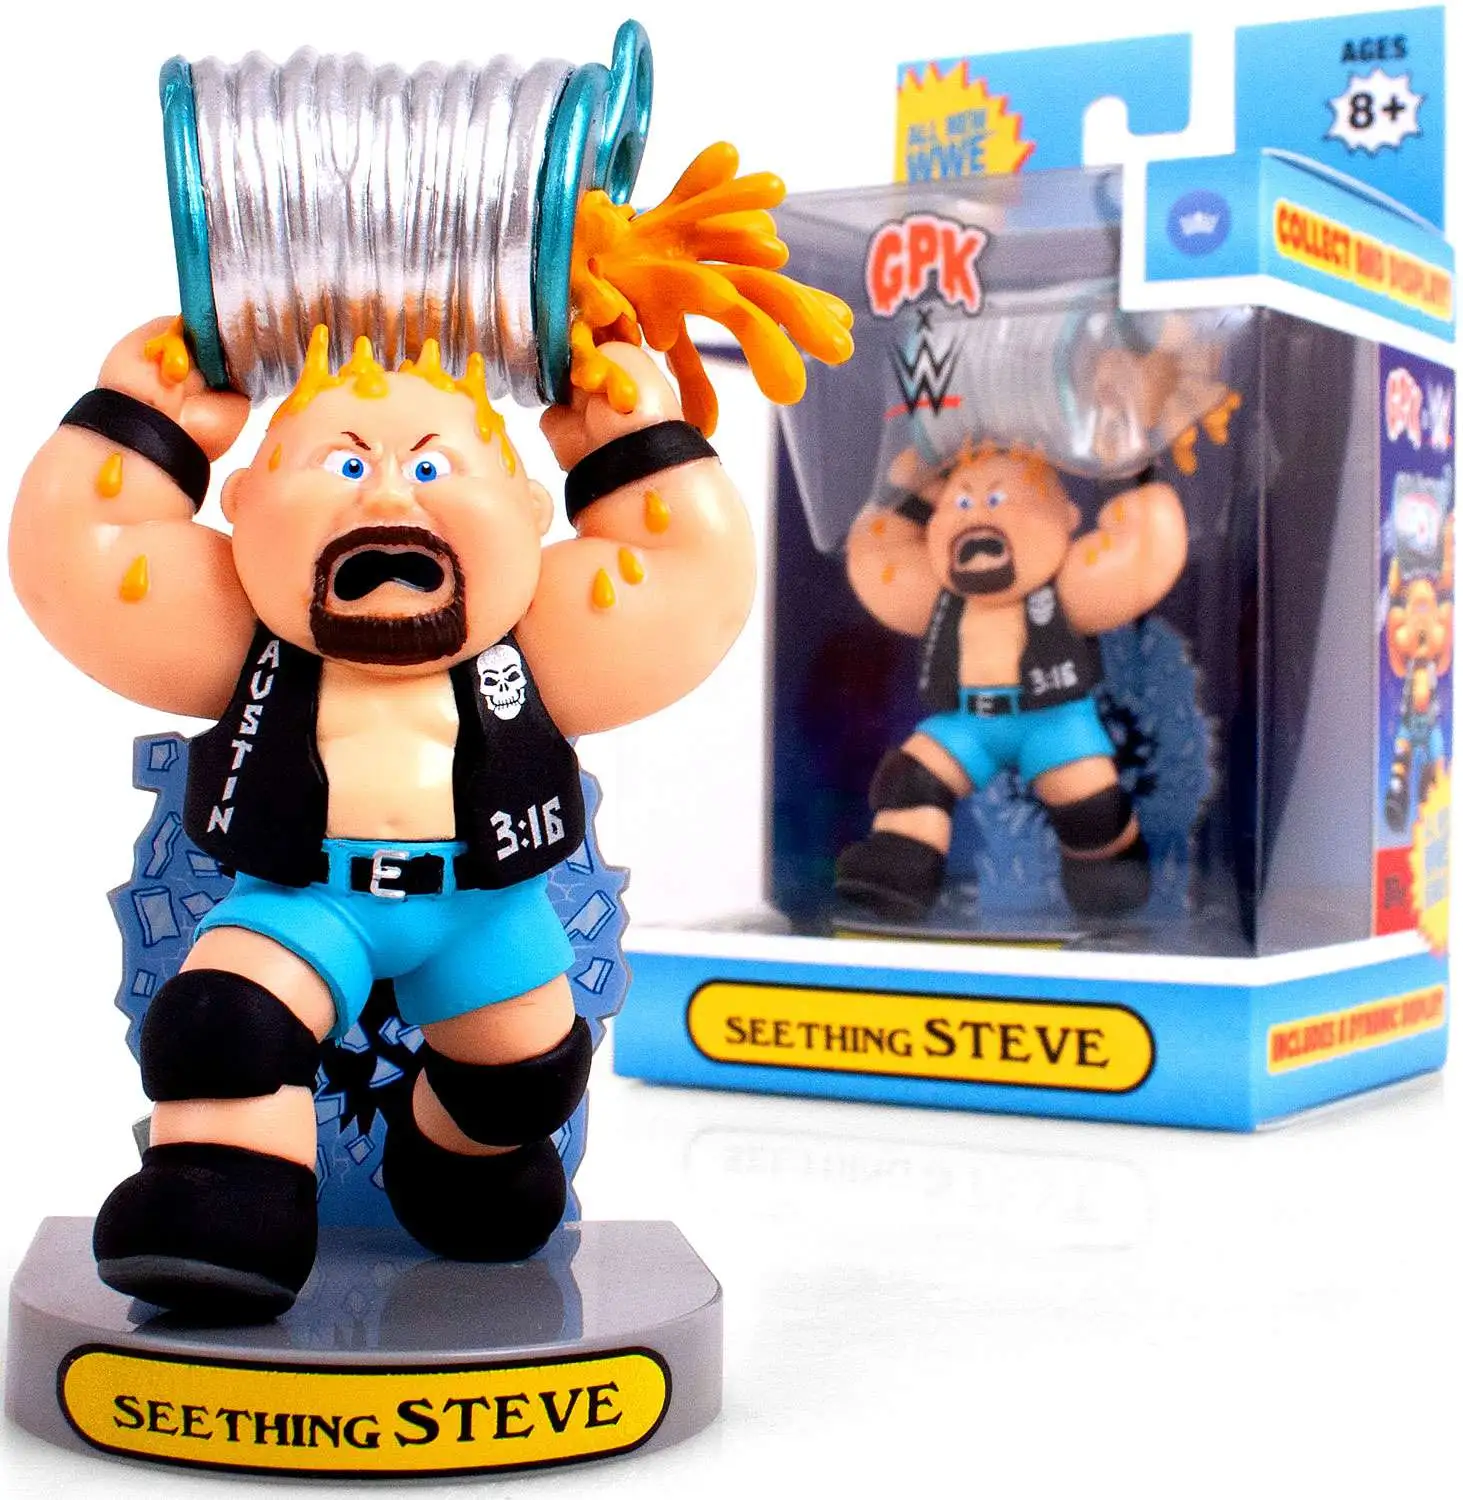 Garbage Pail Kids Topps GPK x WWE Seething Steve Exclusive Figurine